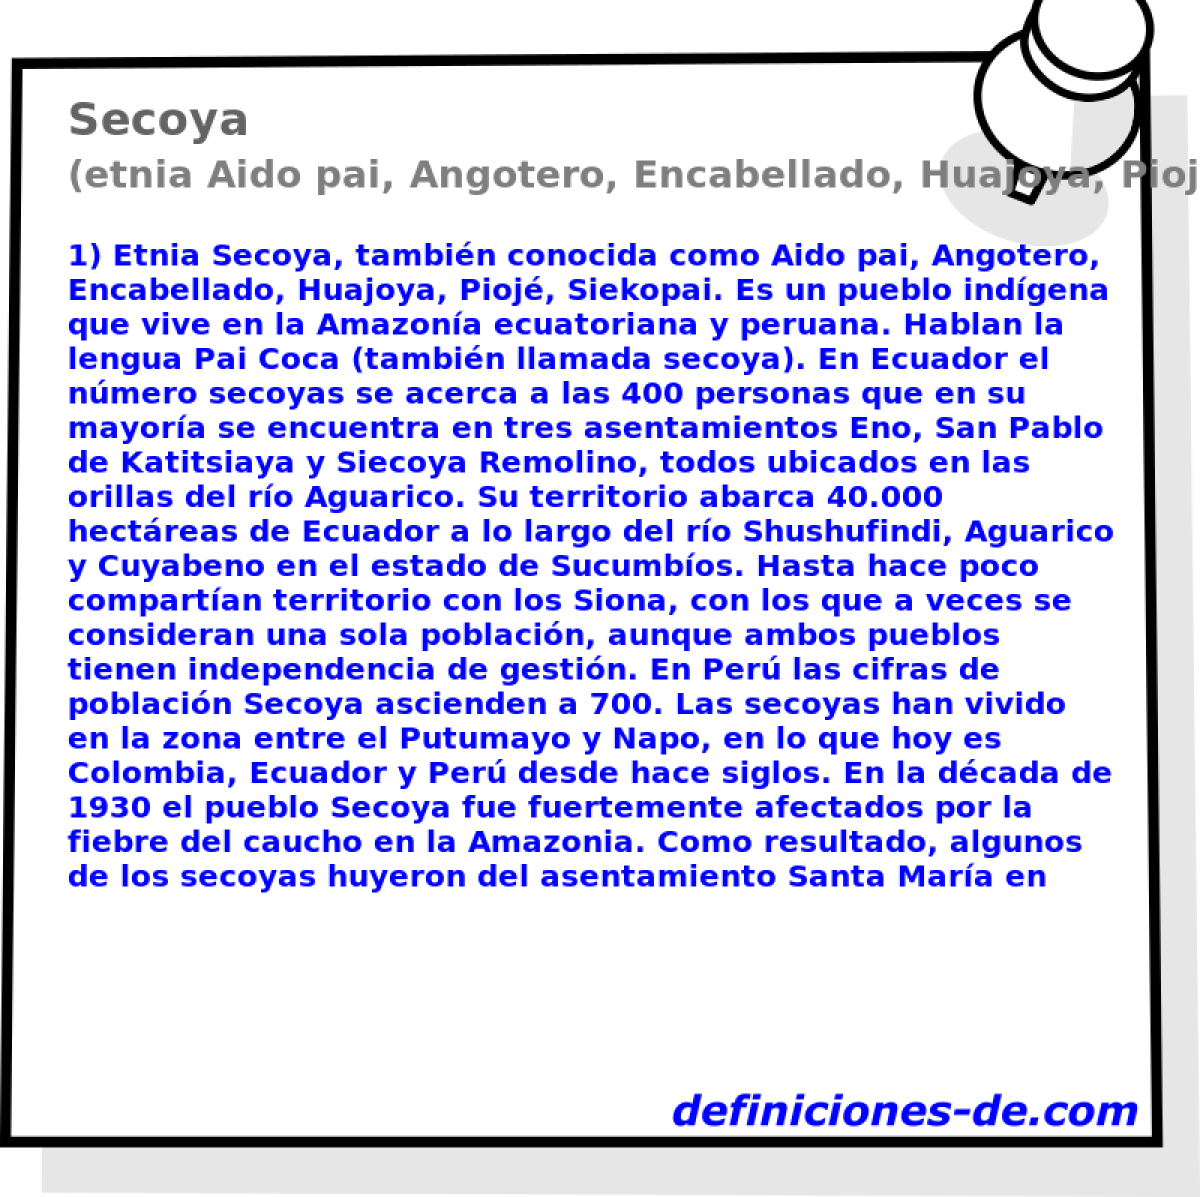 Secoya (etnia Aido pai, Angotero, Encabellado, Huajoya, Pioj, Siekopai)